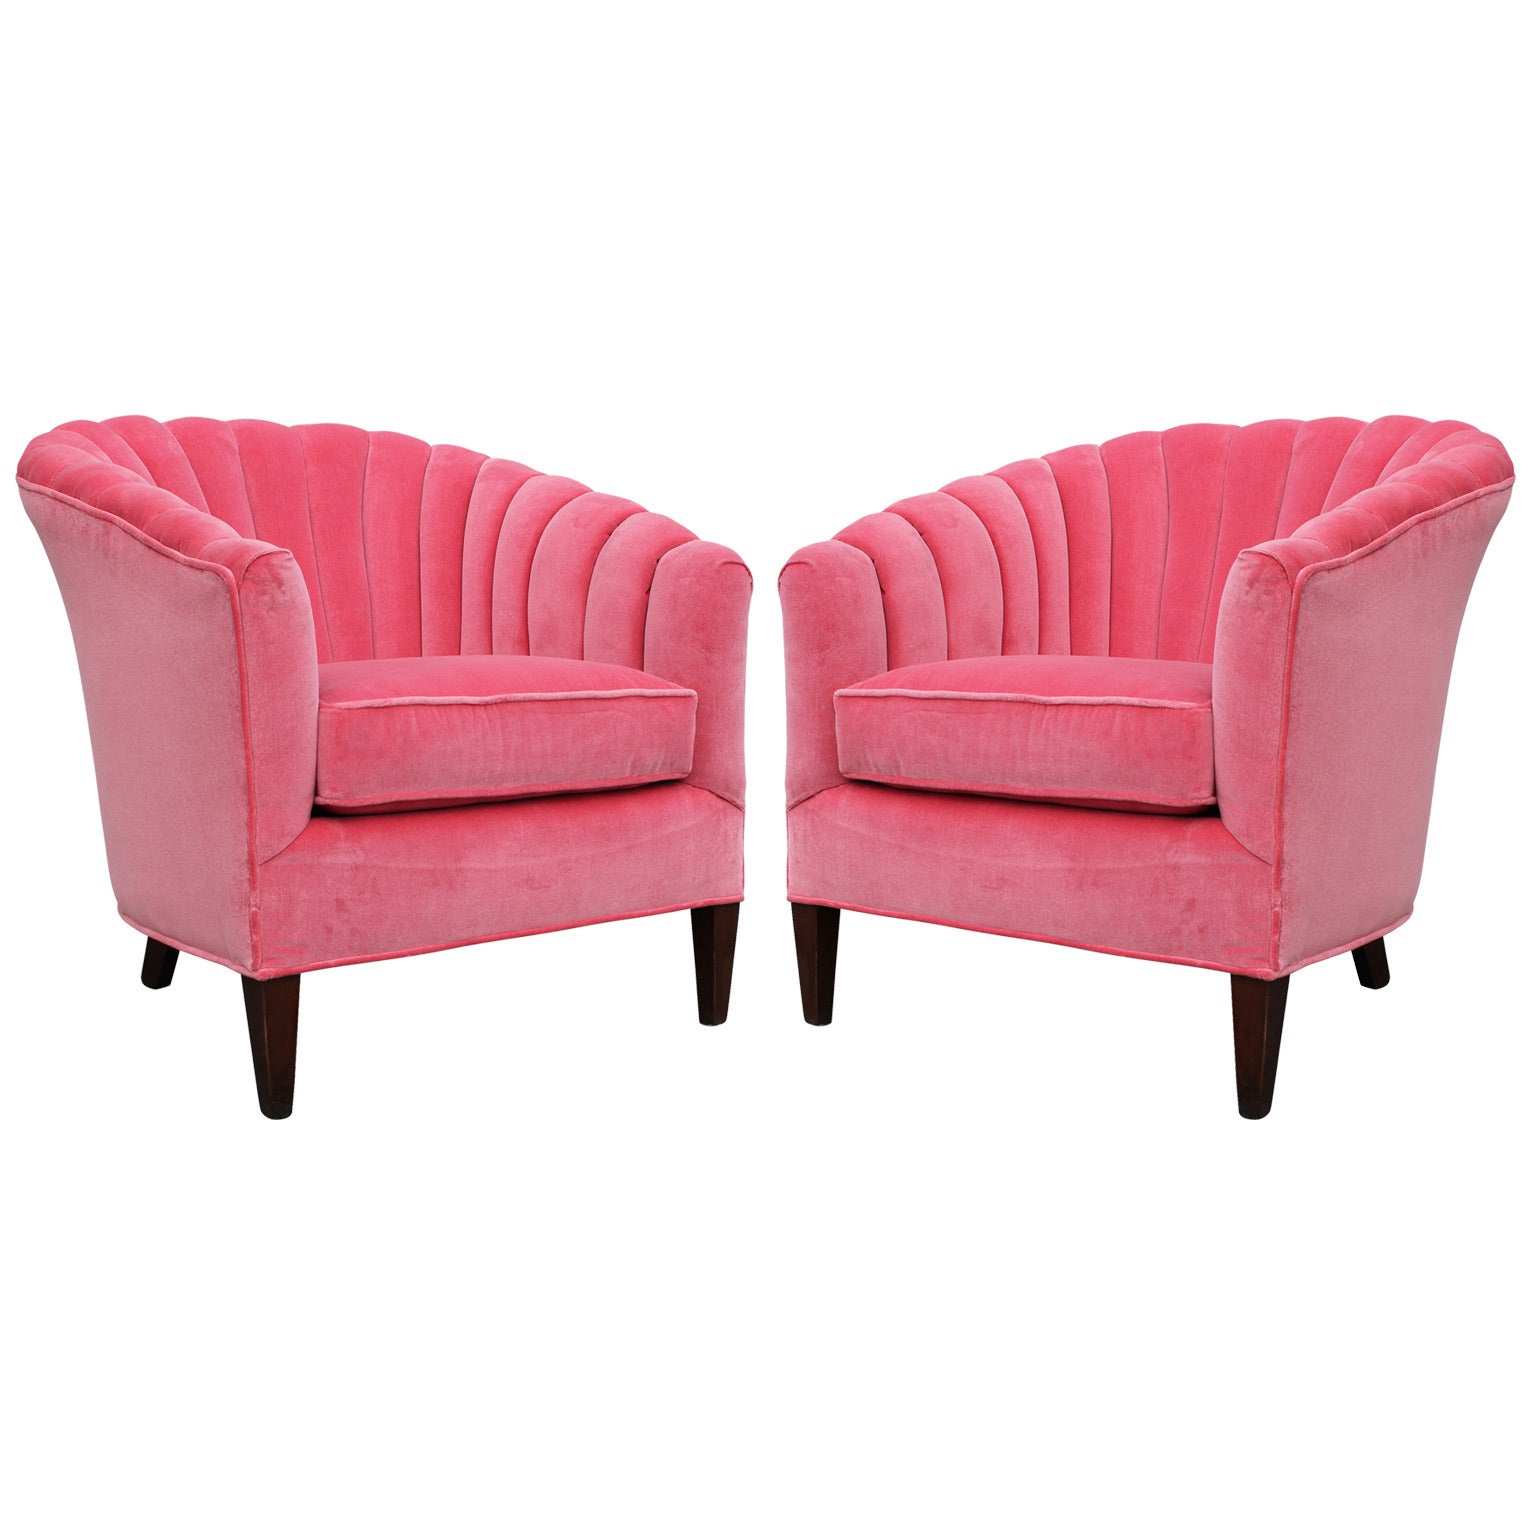 Fabulous Pair of Pink Velvet Barrel Back Chairs